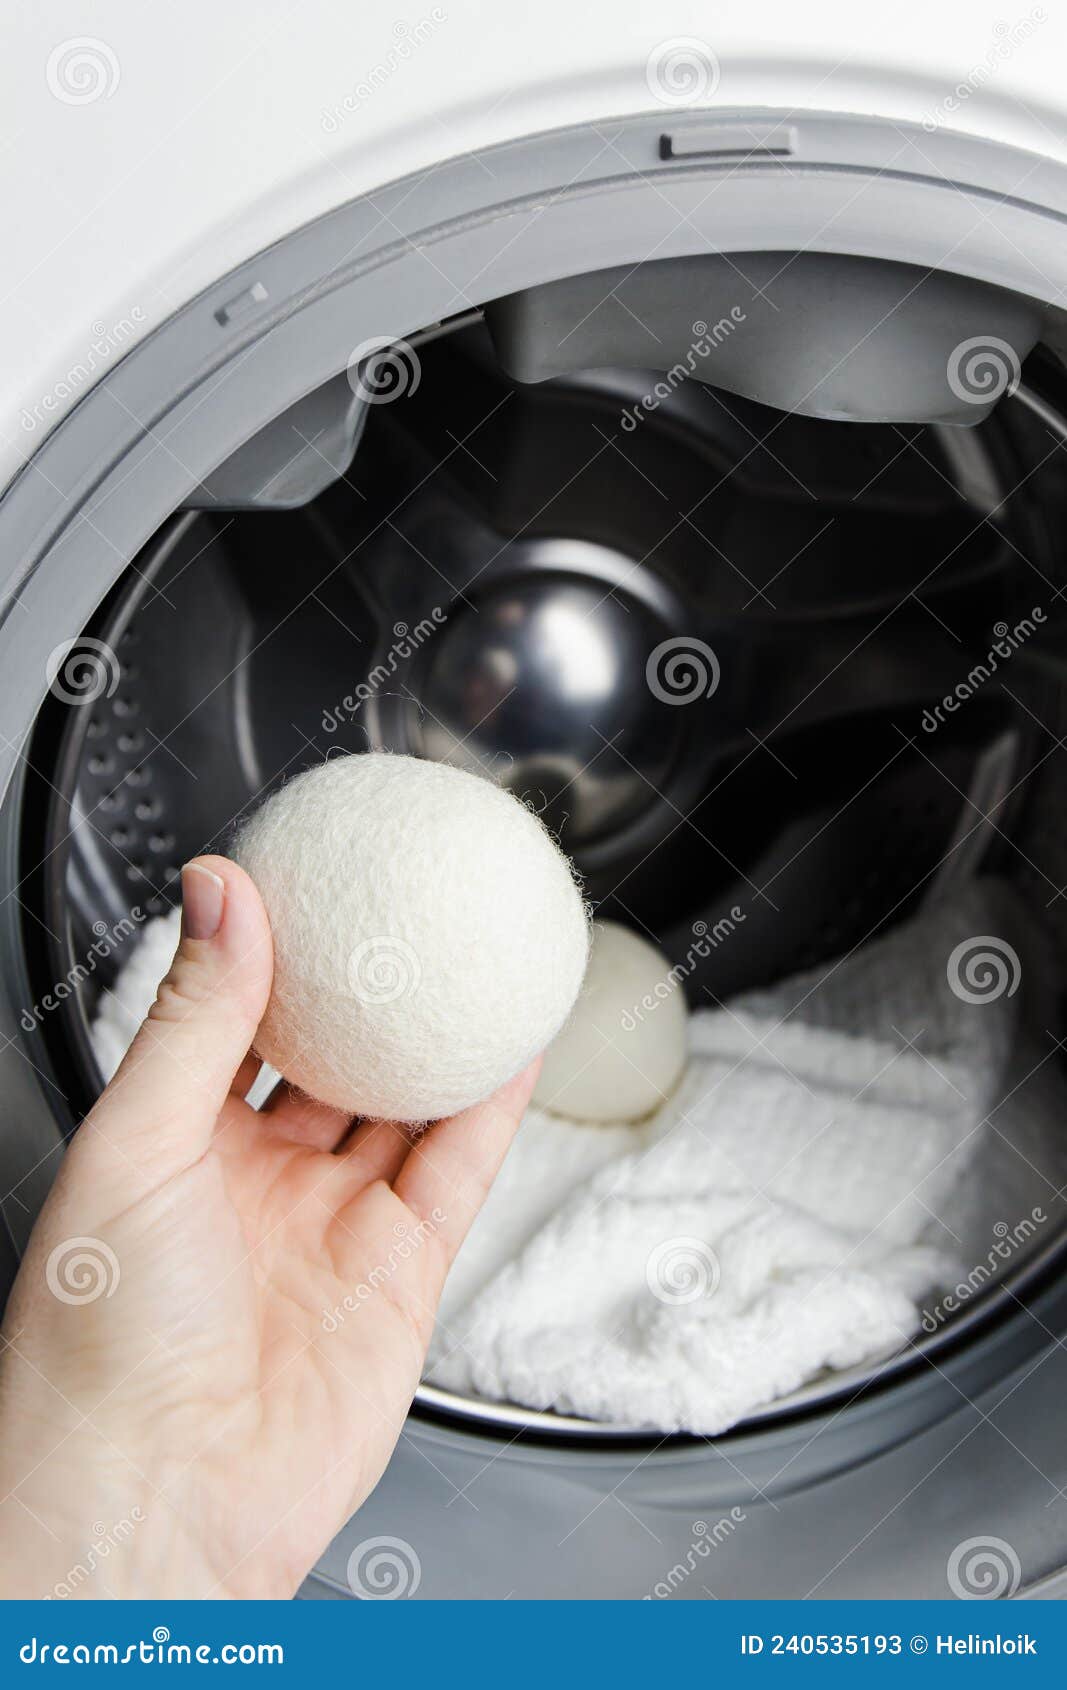 https://thumbs.dreamstime.com/z/mujer-que-usa-bolas-de-secadora-lana-para-m%C3%A1s-ropa-suave-mientras-se-seca-en-el-concepto-lavadora-descargar-electricidad-240535193.jpg